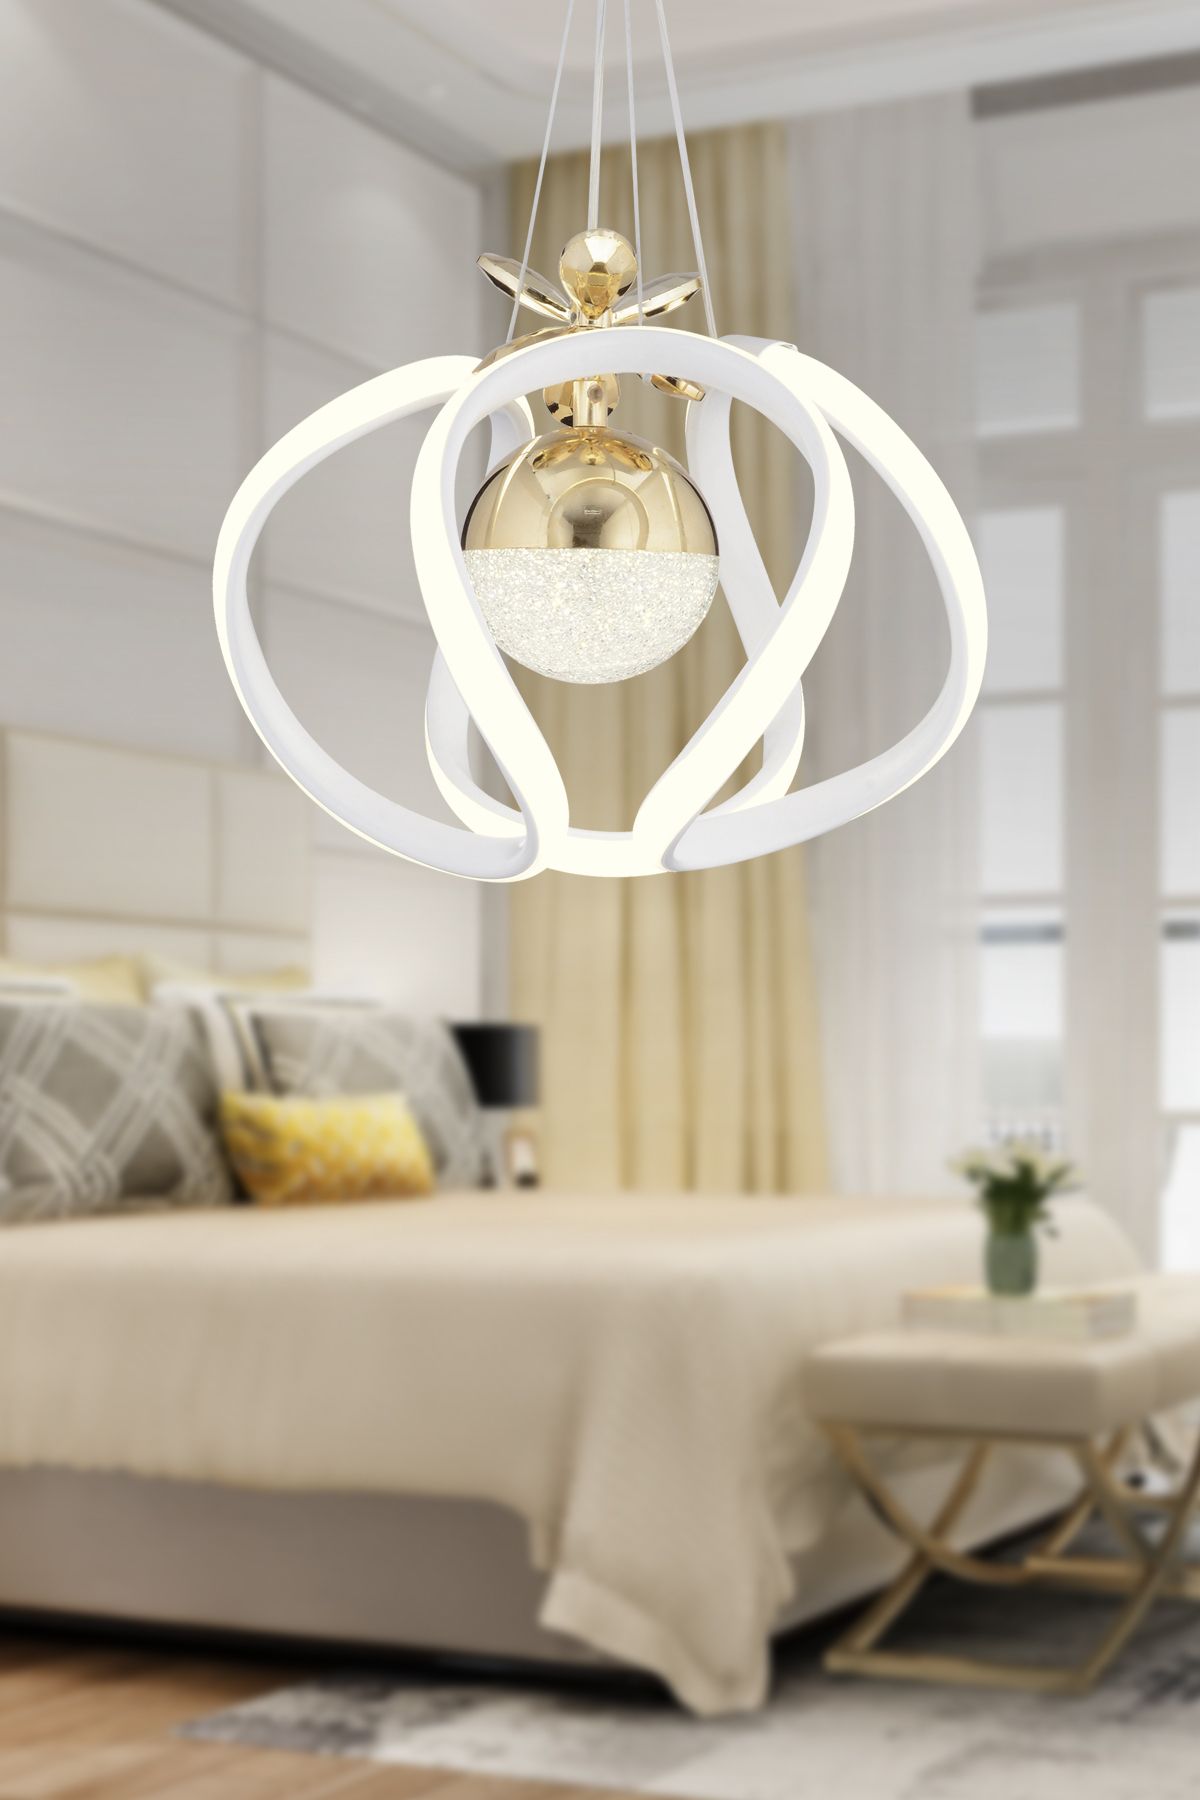 Apliqa Pelin Tekli Beyaz Gold 3 Renkli 40 Watt Ledli Modern Oturma Odası, Koridor, Salon Led Avize